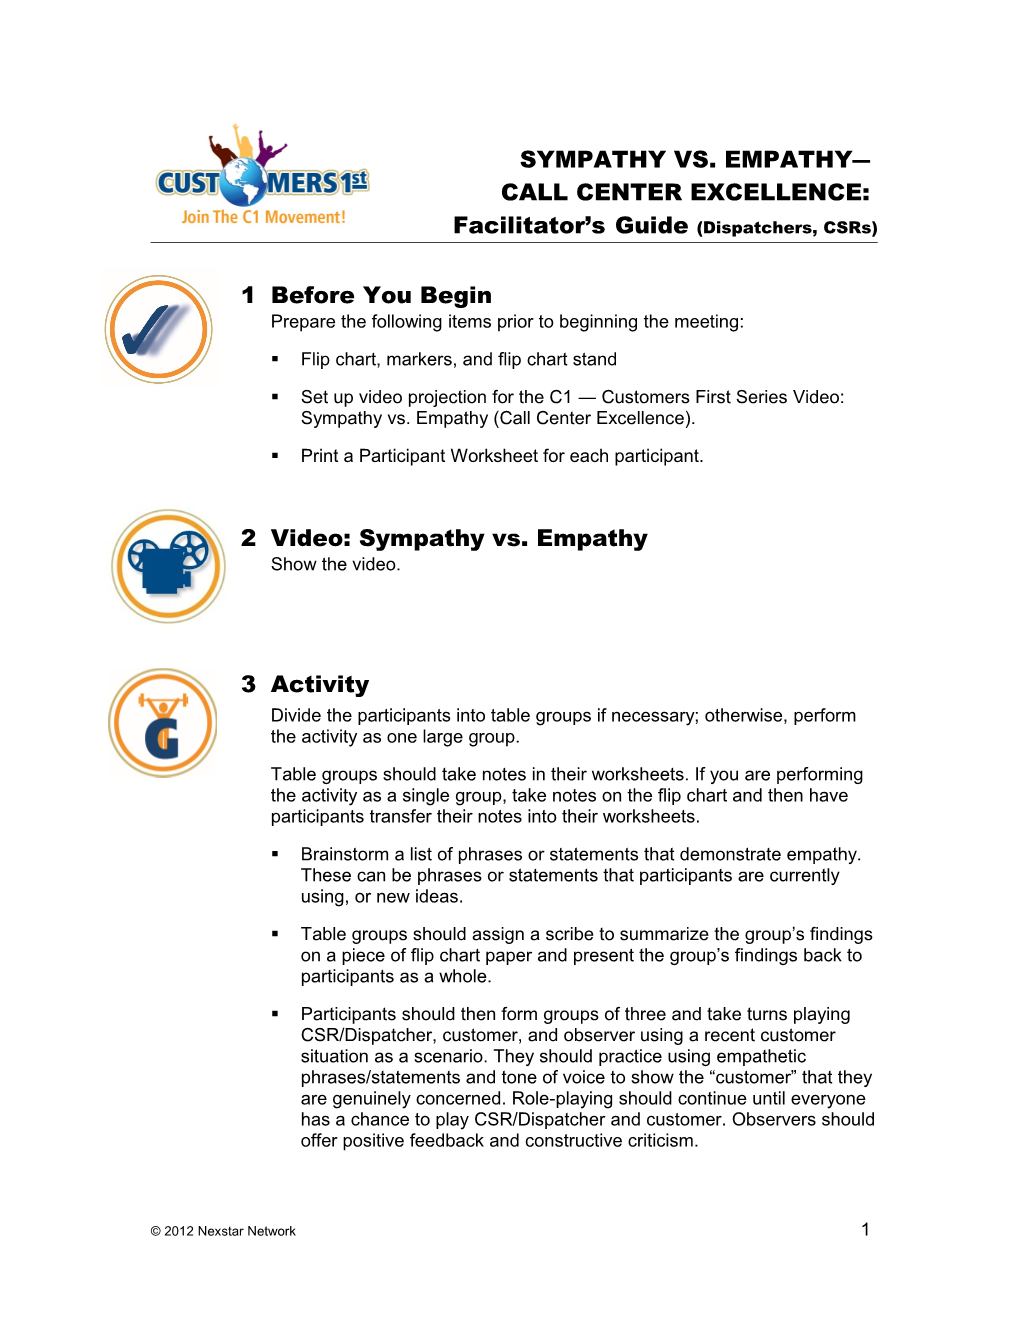 58 Sympathy Vs Empathy Call Center Excellence Facilitator Guide